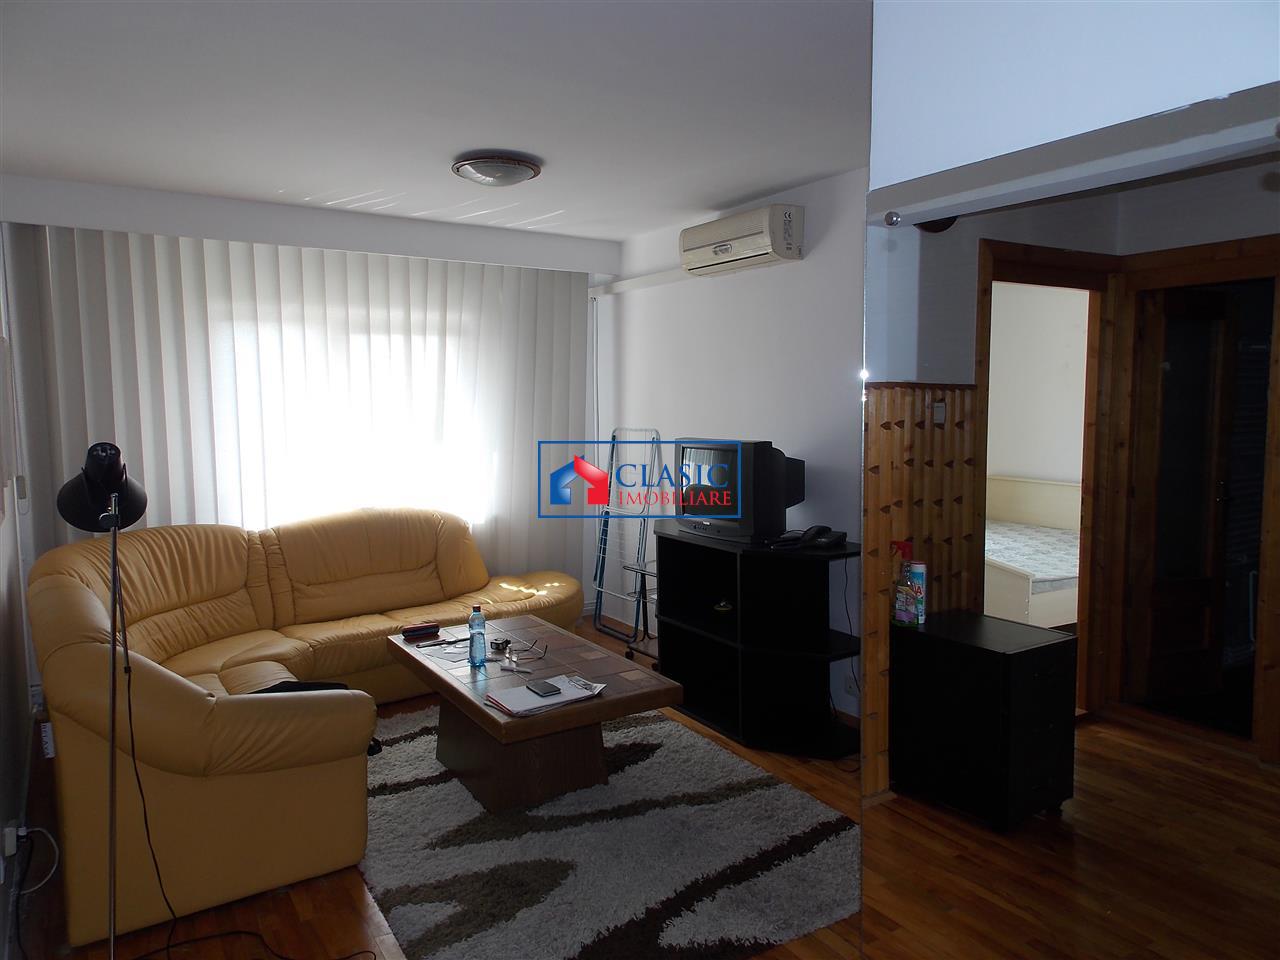 Inchiriere apartament 4 camere modern in Grigorescu